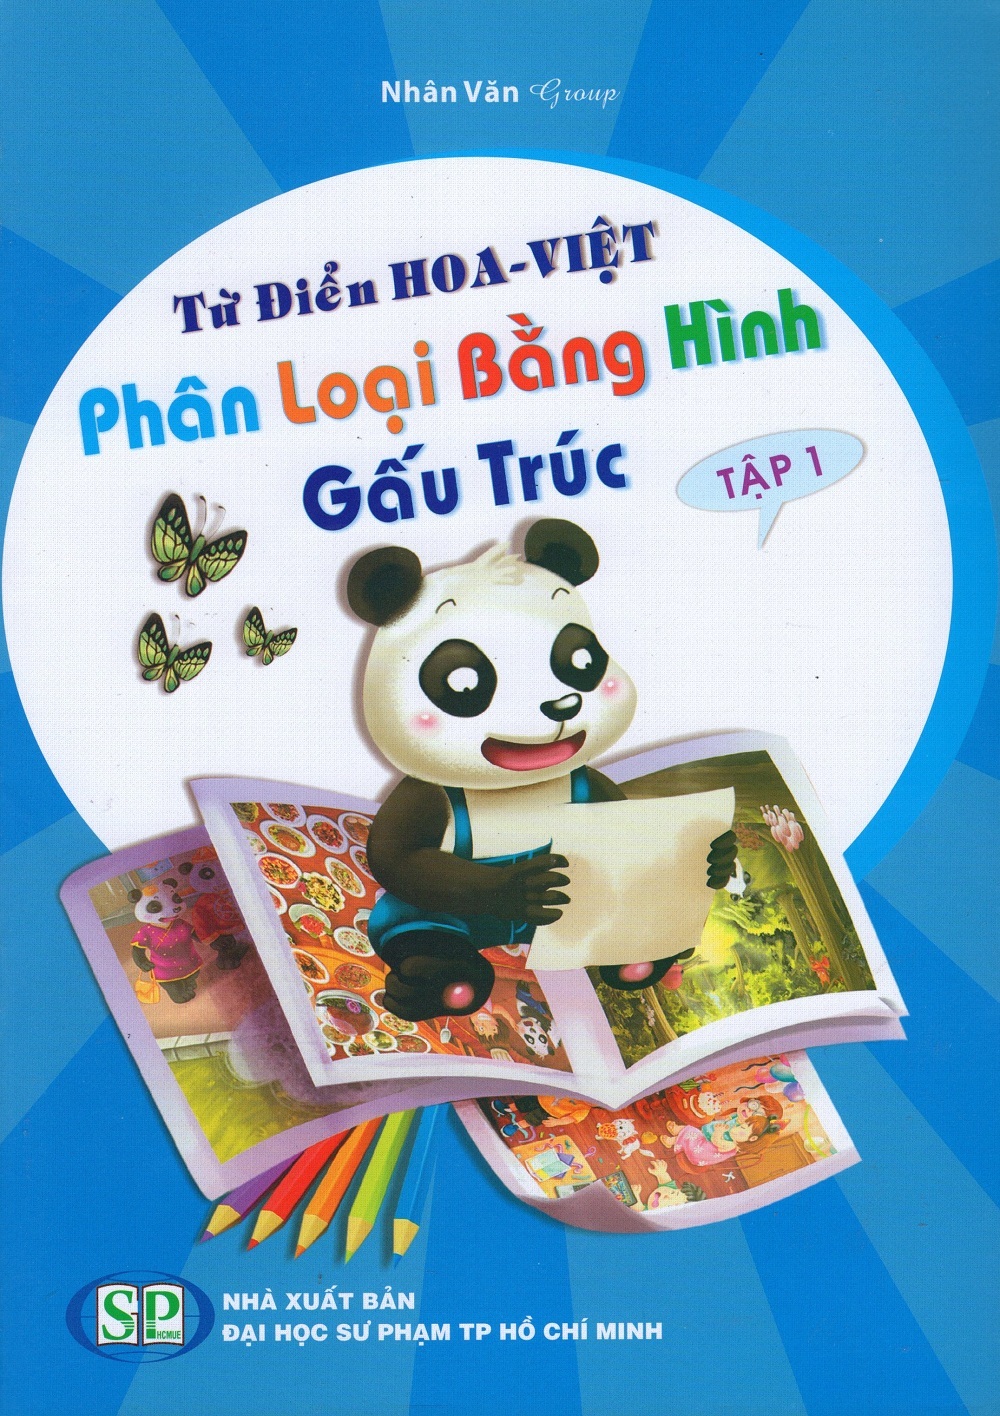 Từ Điển Hoa Việt - Phân Loại Bằng Hình - Gấu Trúc Tập 1